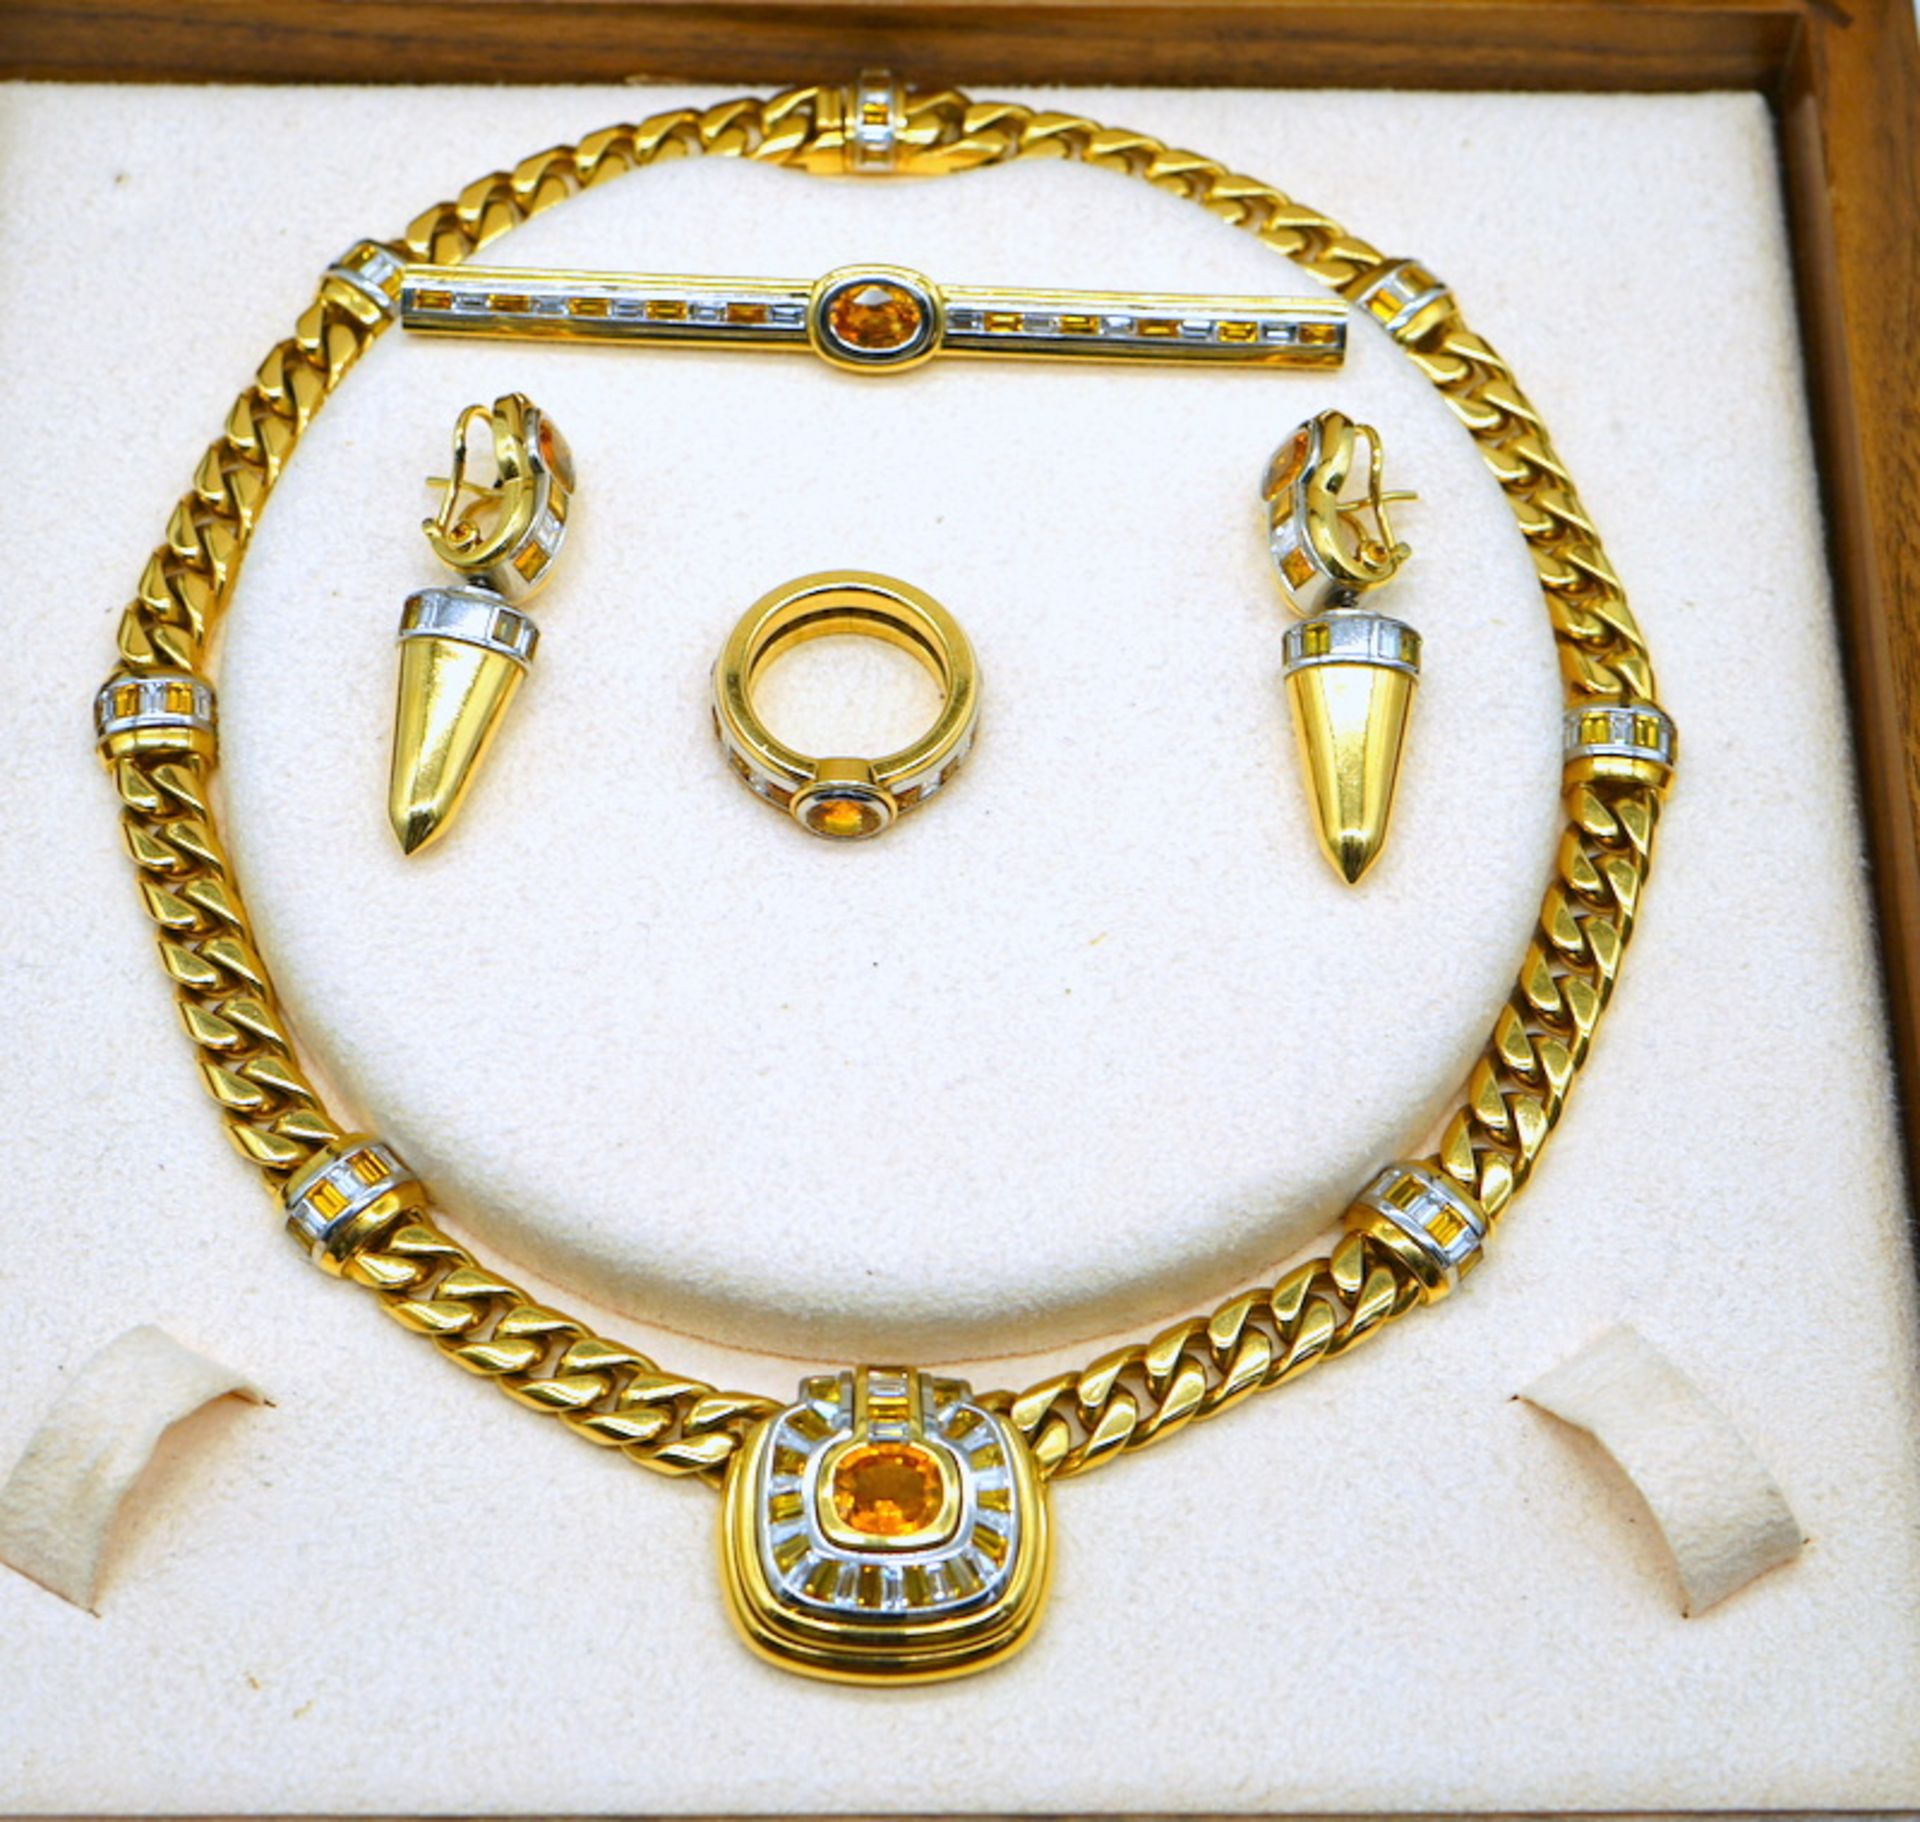 Parure mit Diamanten und gelben Saphiren, 750 GG, Juweliersanfertigung - Image 10 of 10